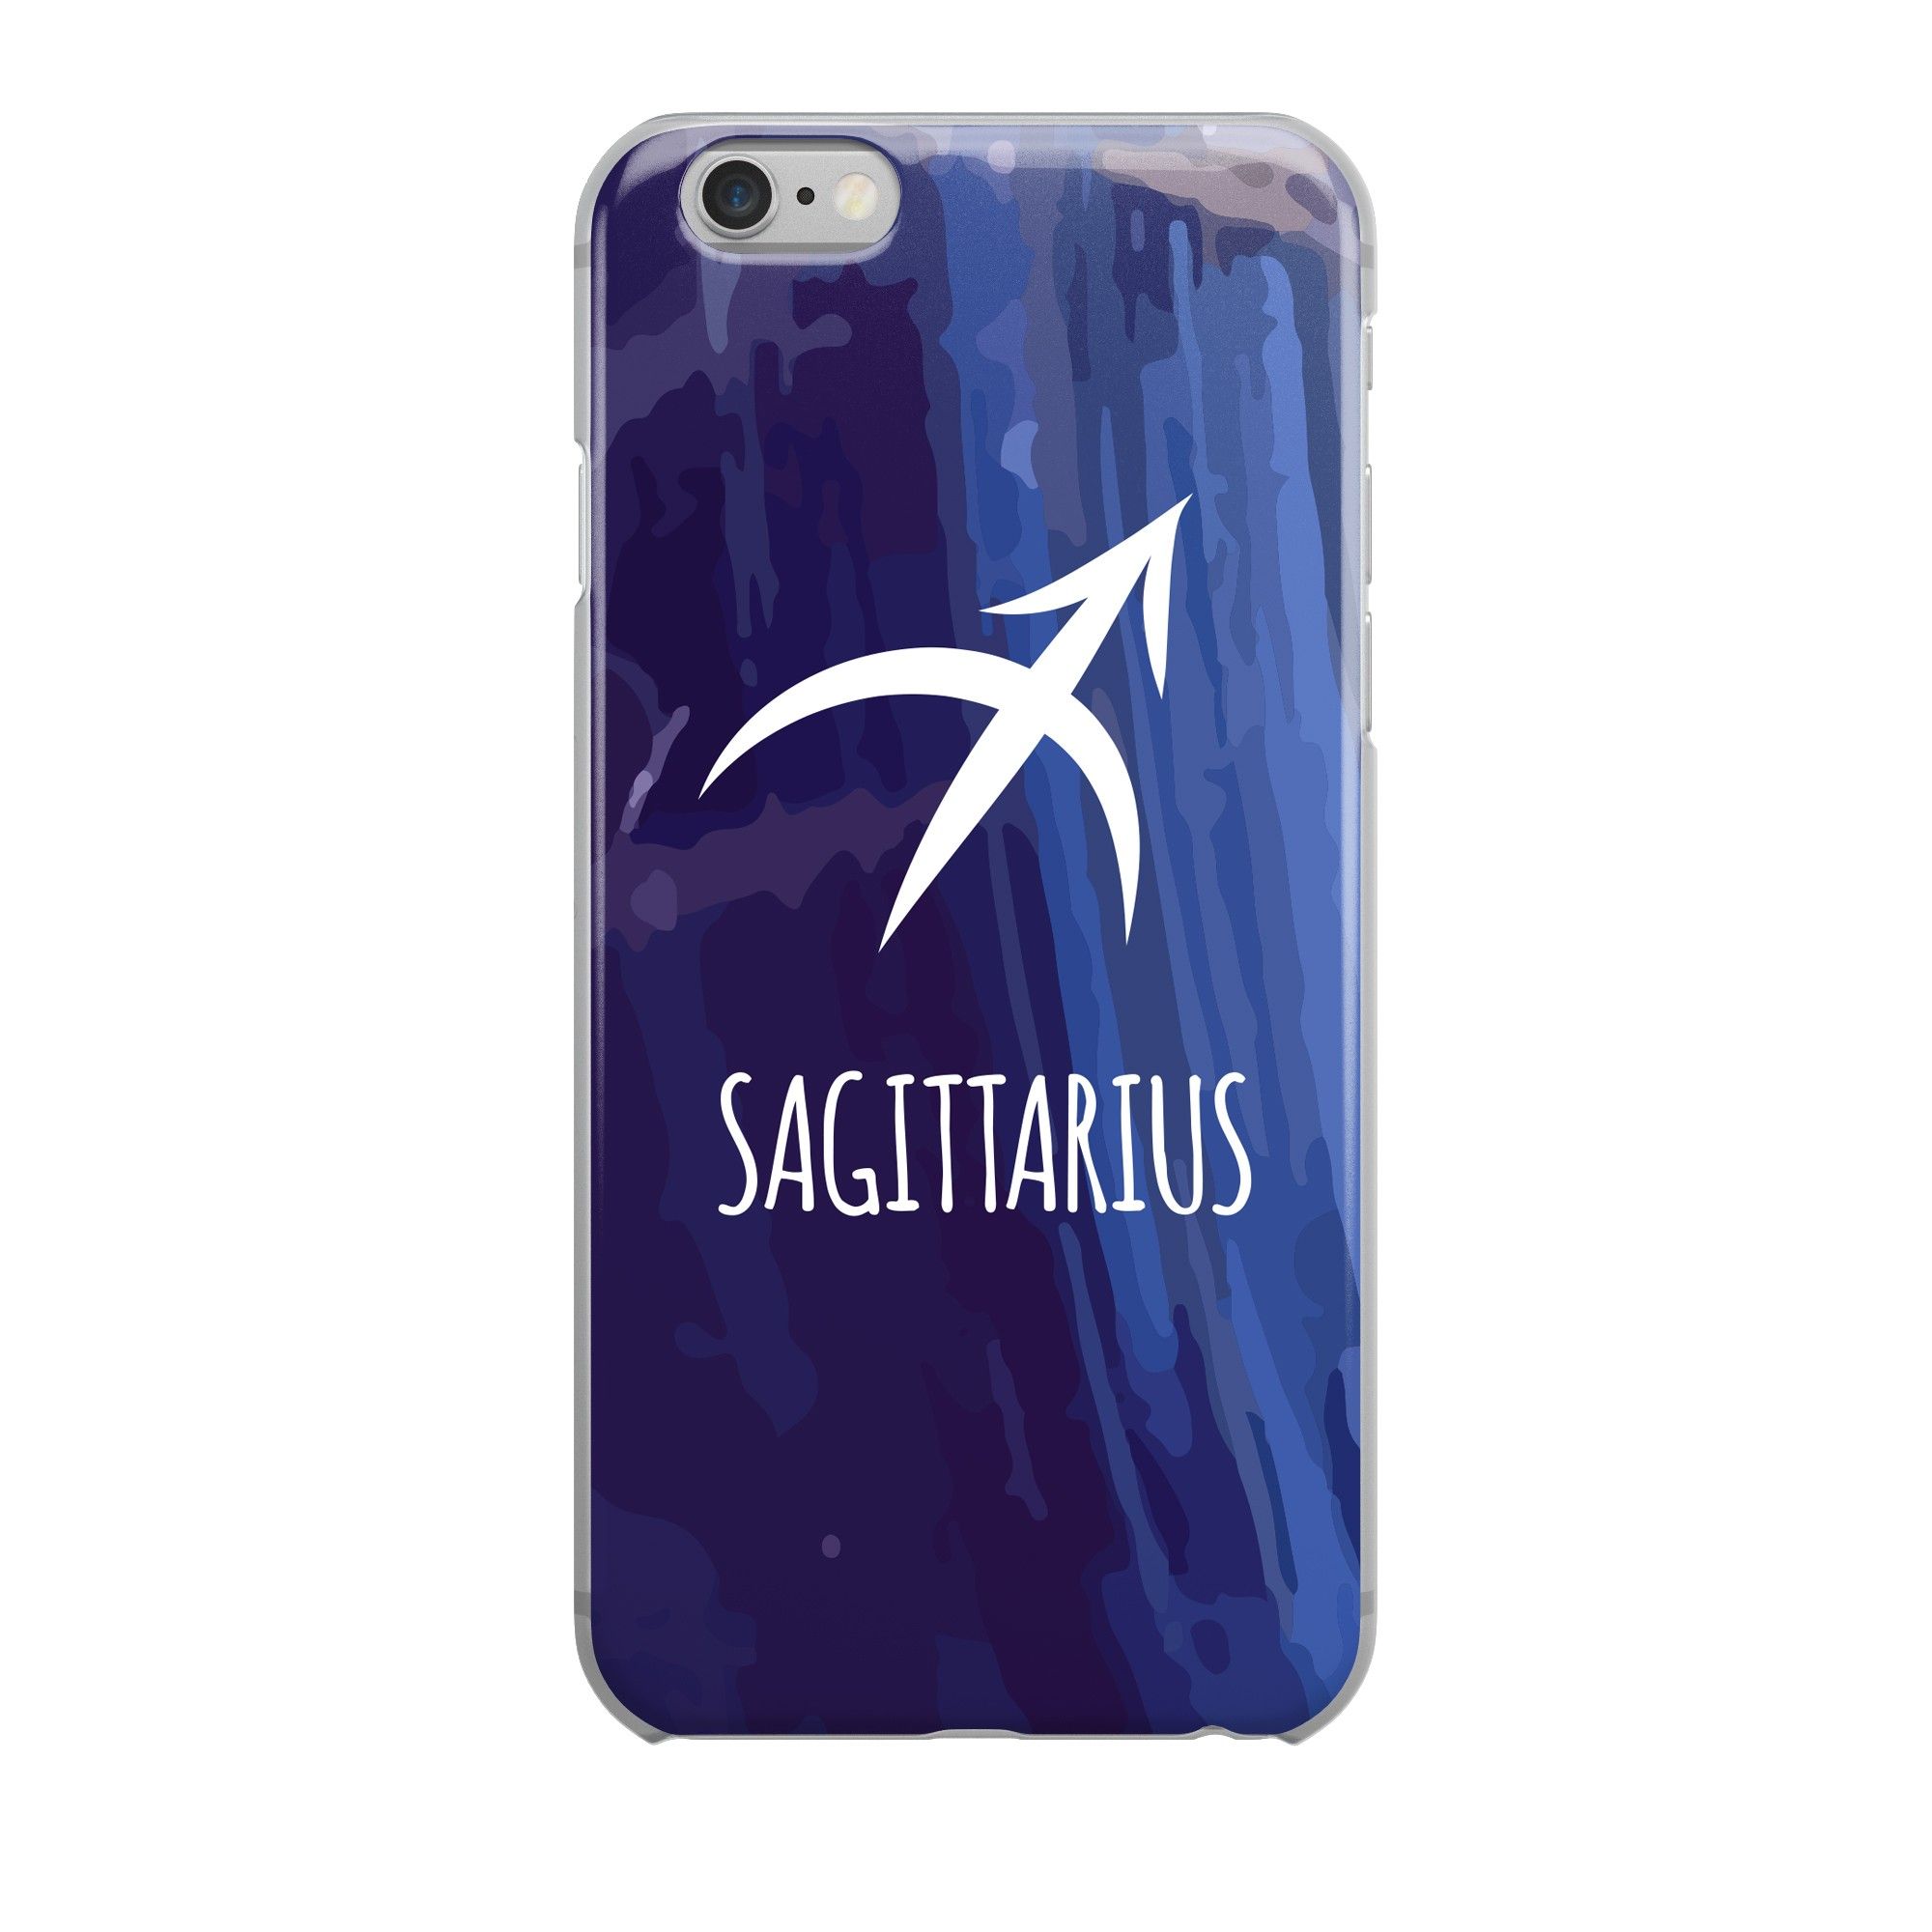  Sagittarius - Iphone 6+ 